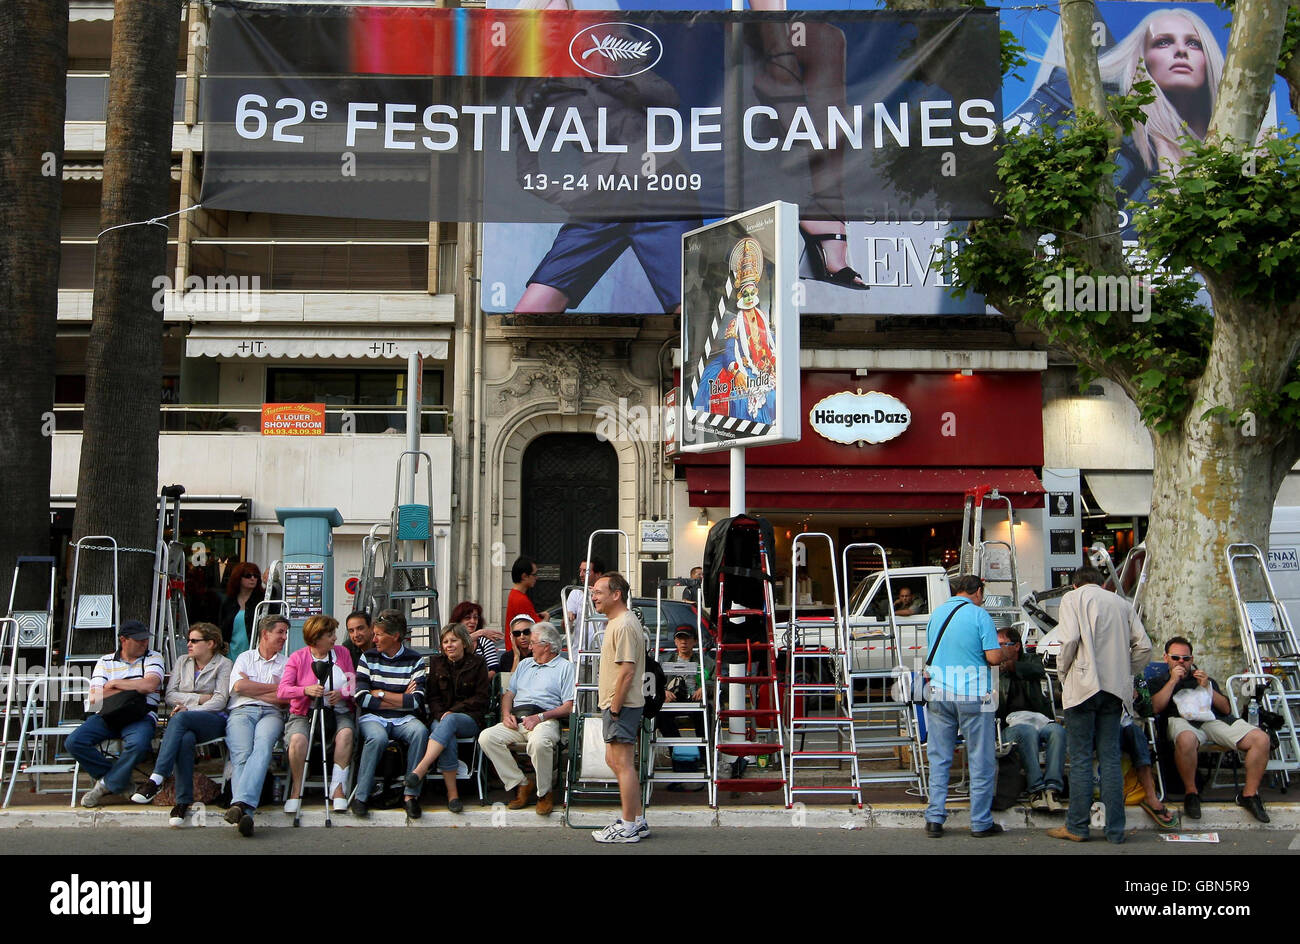 I tifosi con scale si riuniscono di fronte al Palais des Festivals, a Cannes, in Francia, in vista dell'inizio del Festival de Cannes, che inizia domani. Foto Stock